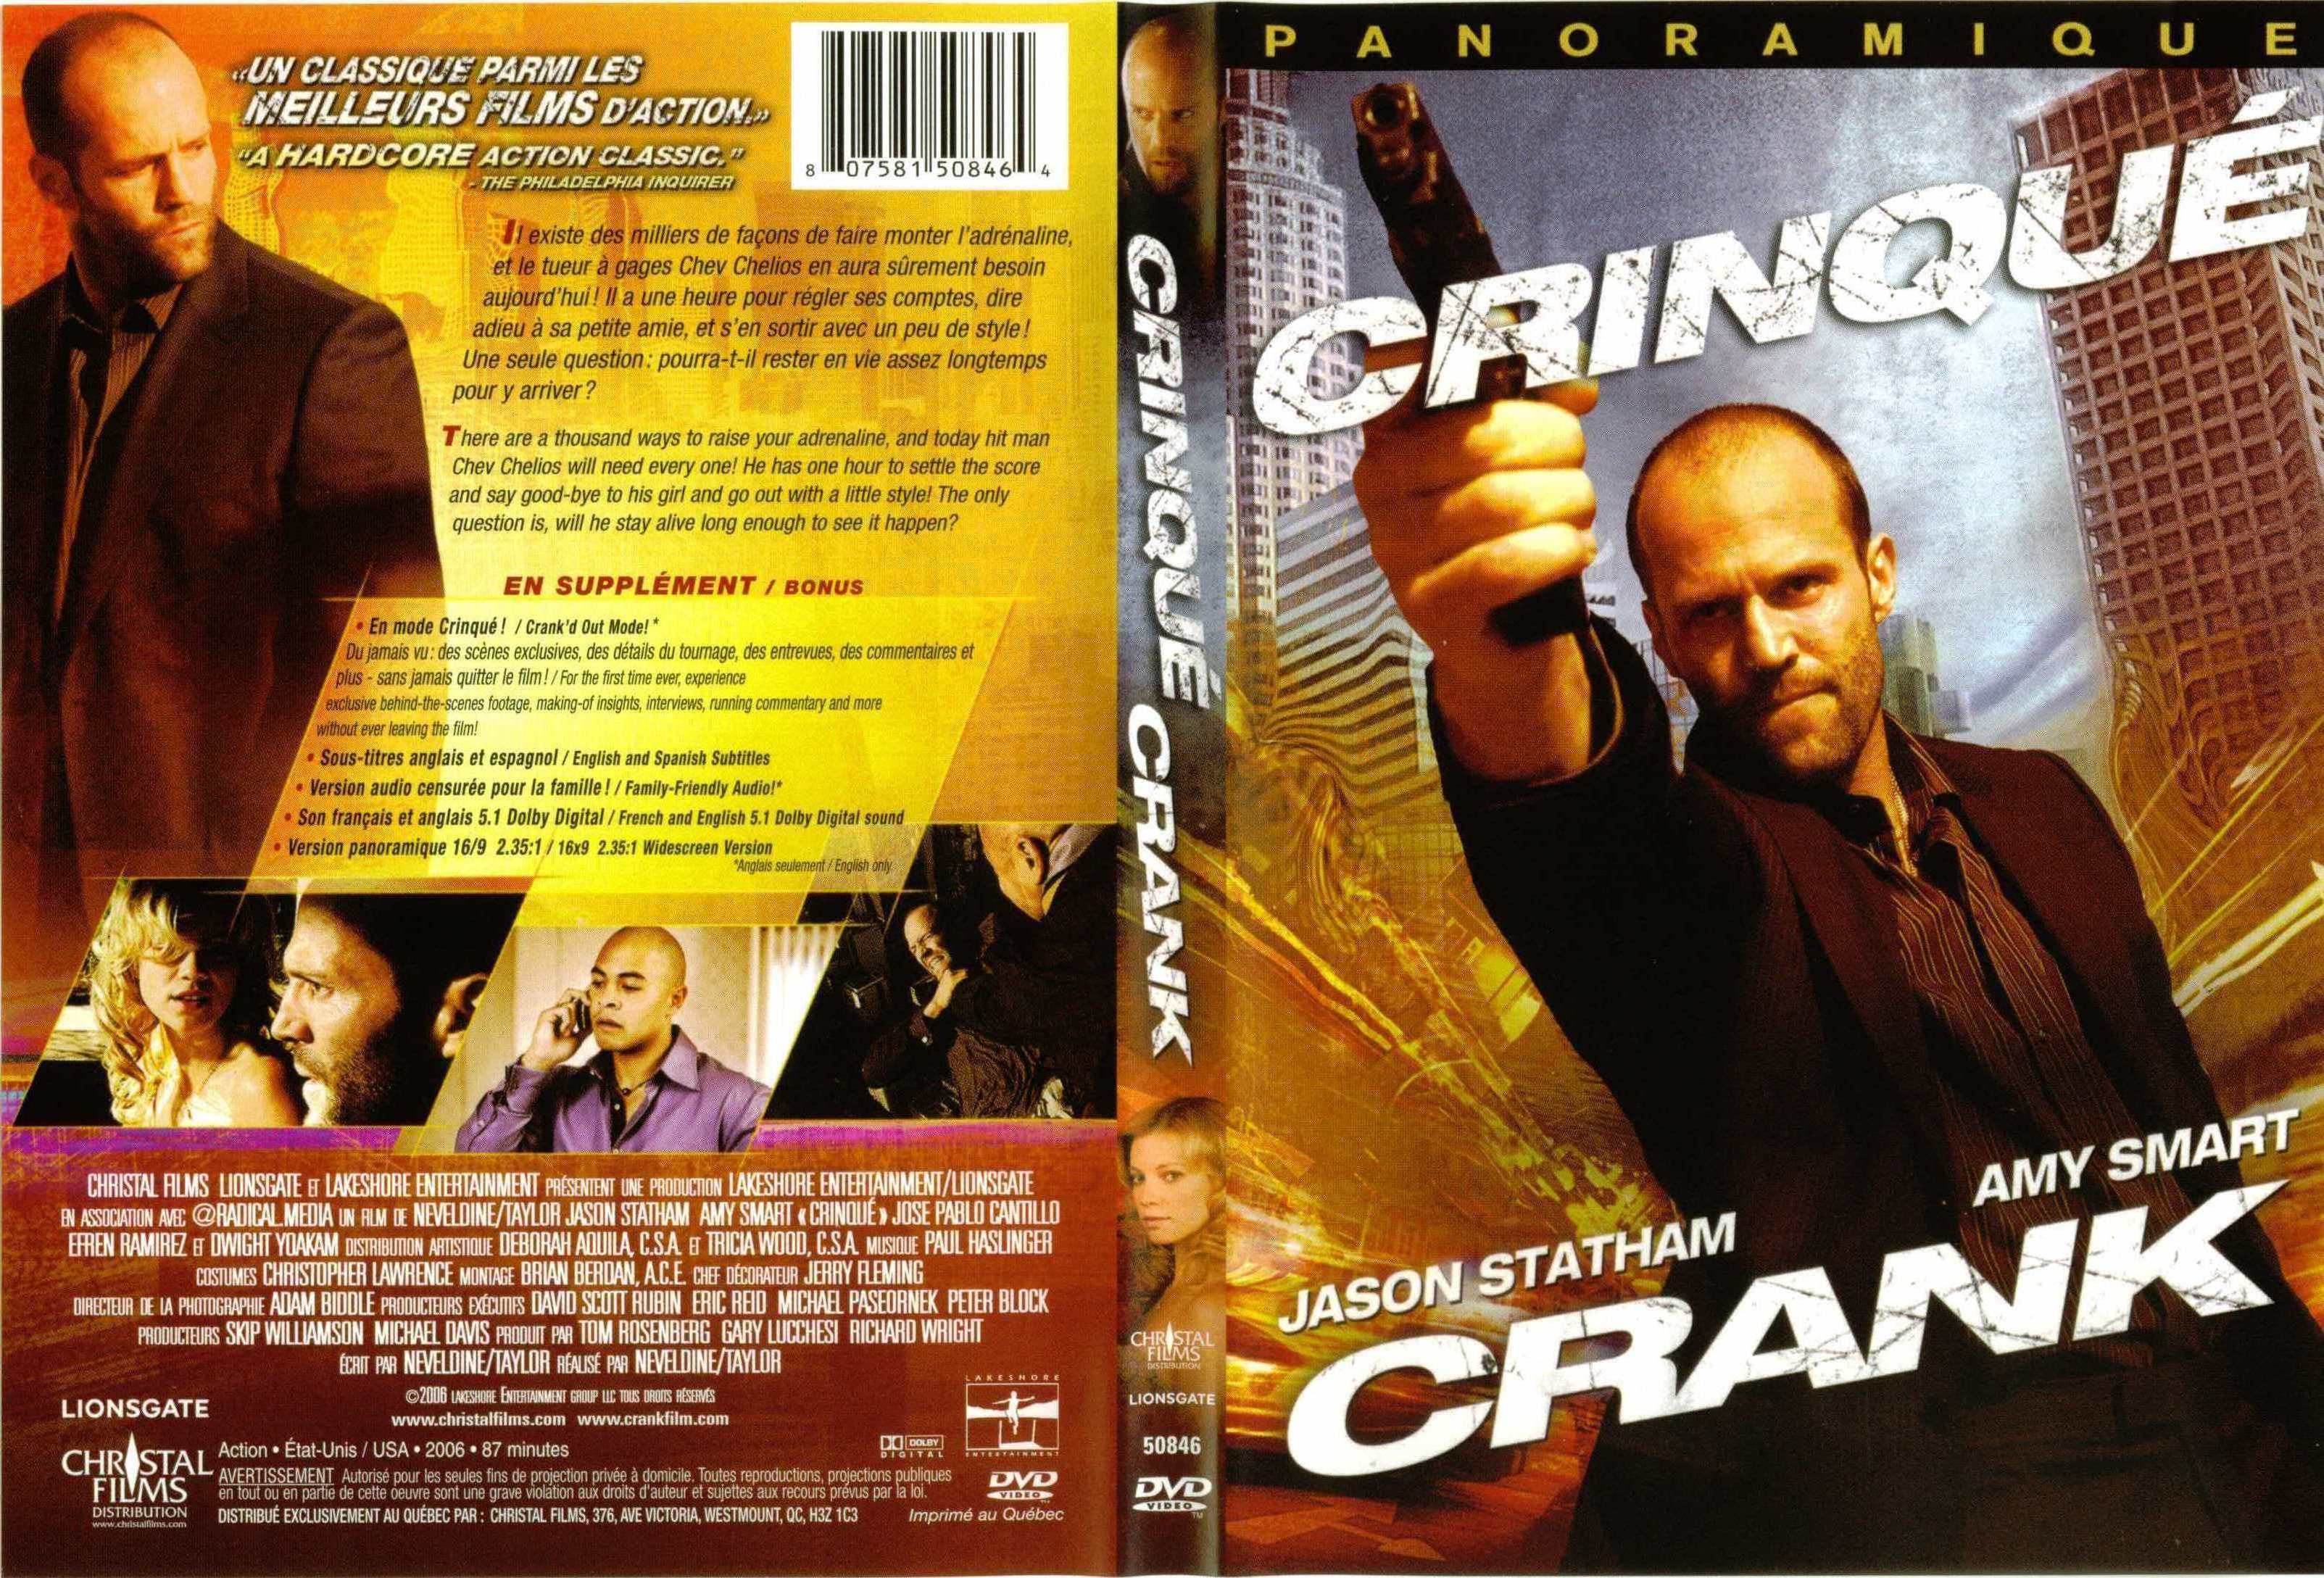 Jaquette DVD Crinqu - Crank (Canadienne)